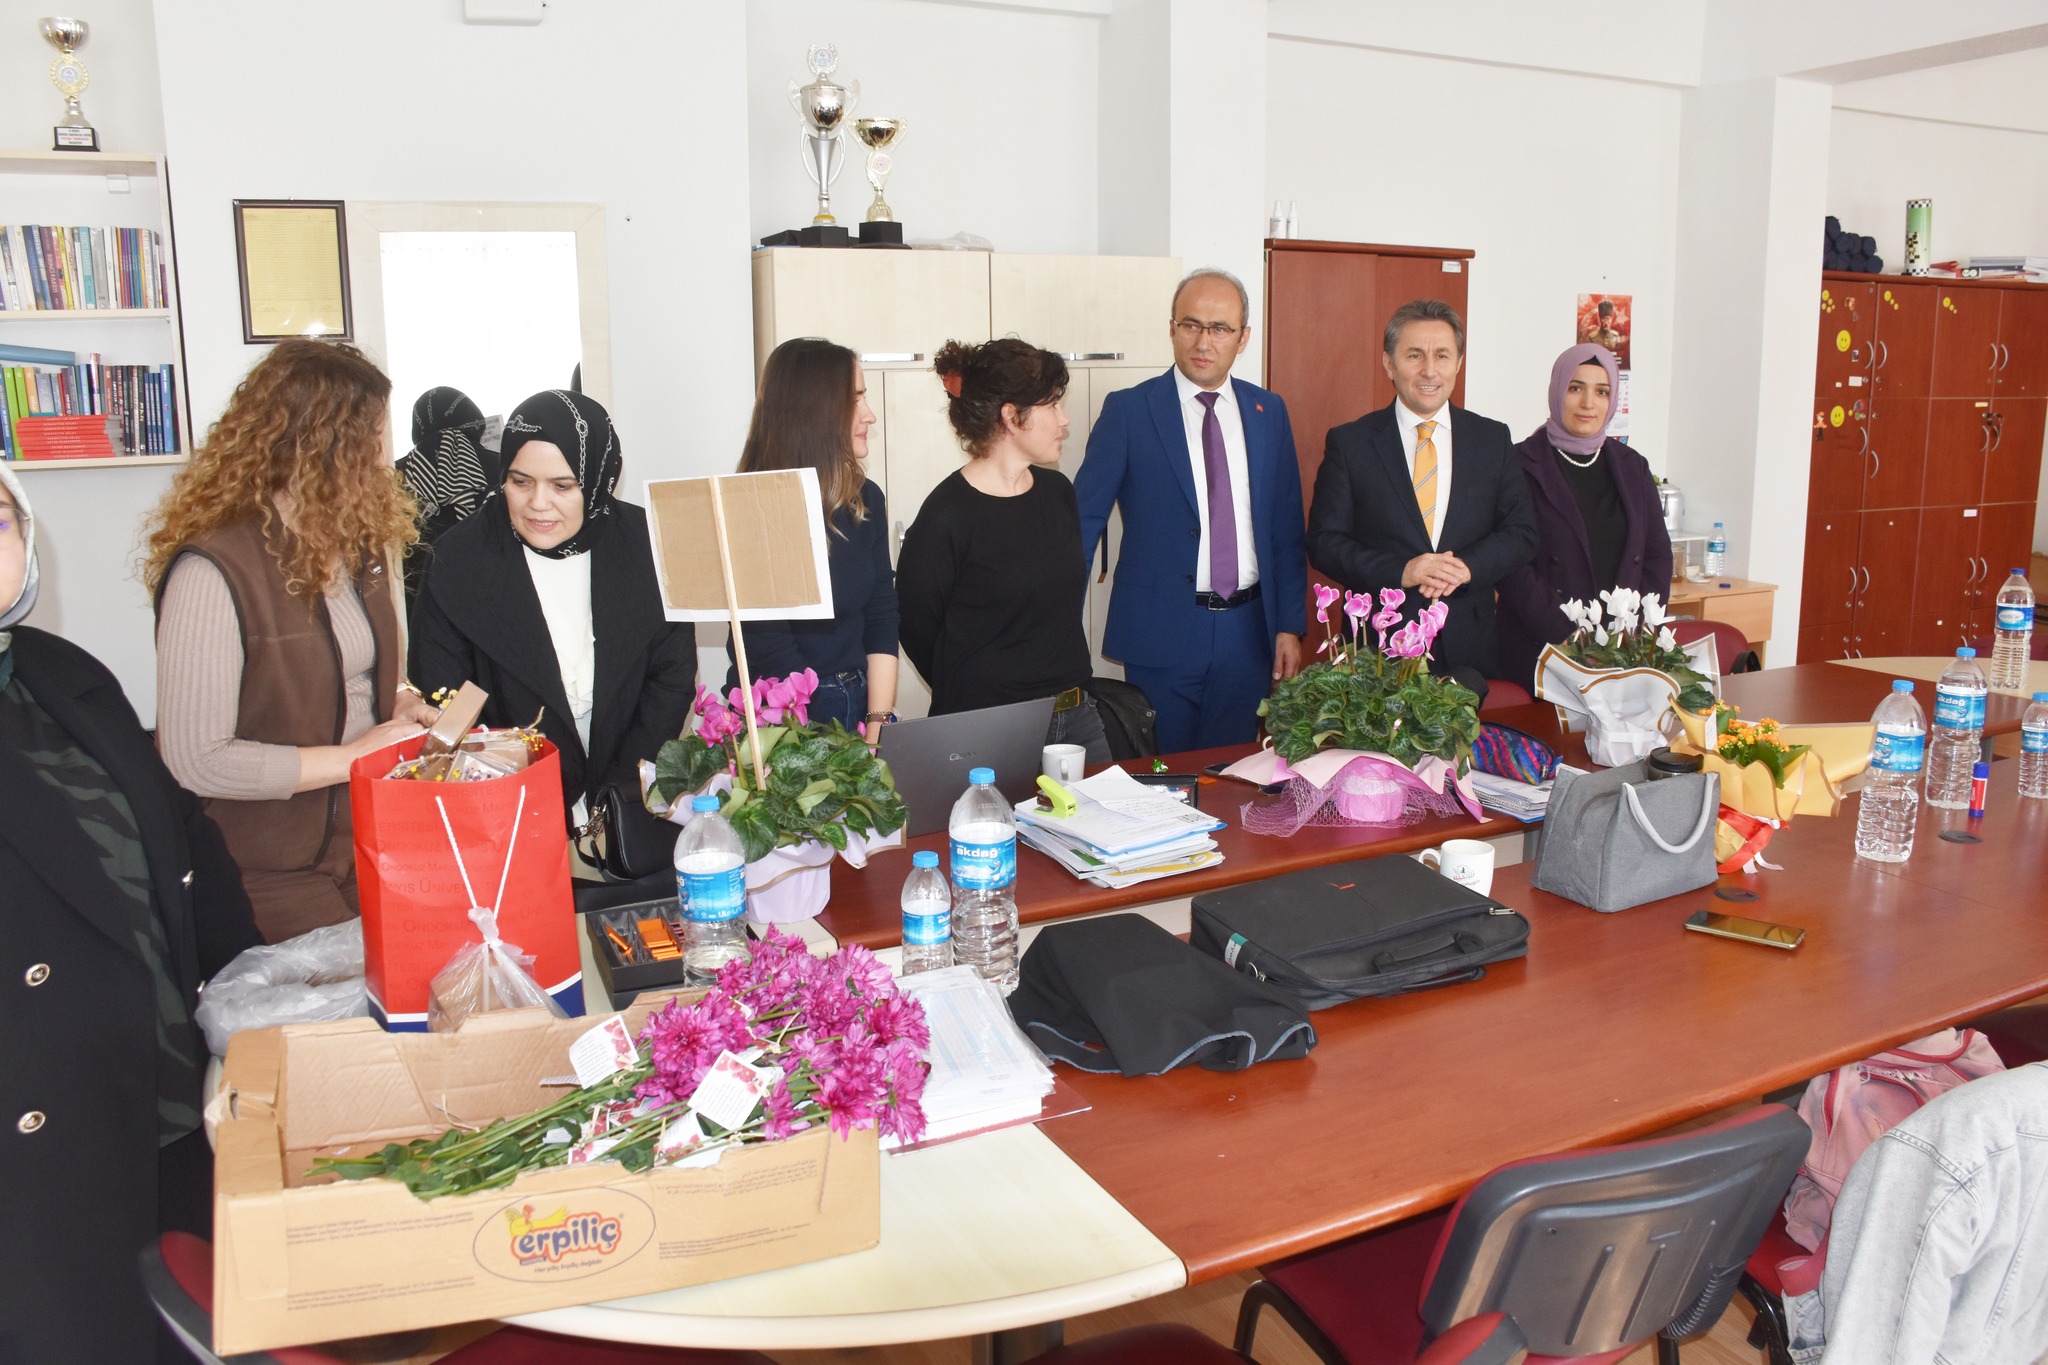 Belediye Başkanımız Hüseyin Kıyma 24 Kasım Öğretmenler Günü münasebetiyle ilçemiz öğretmenlerini ziyaret ederek, Öğretmenler Gününü kutladı, hediyelerini takdim etti.